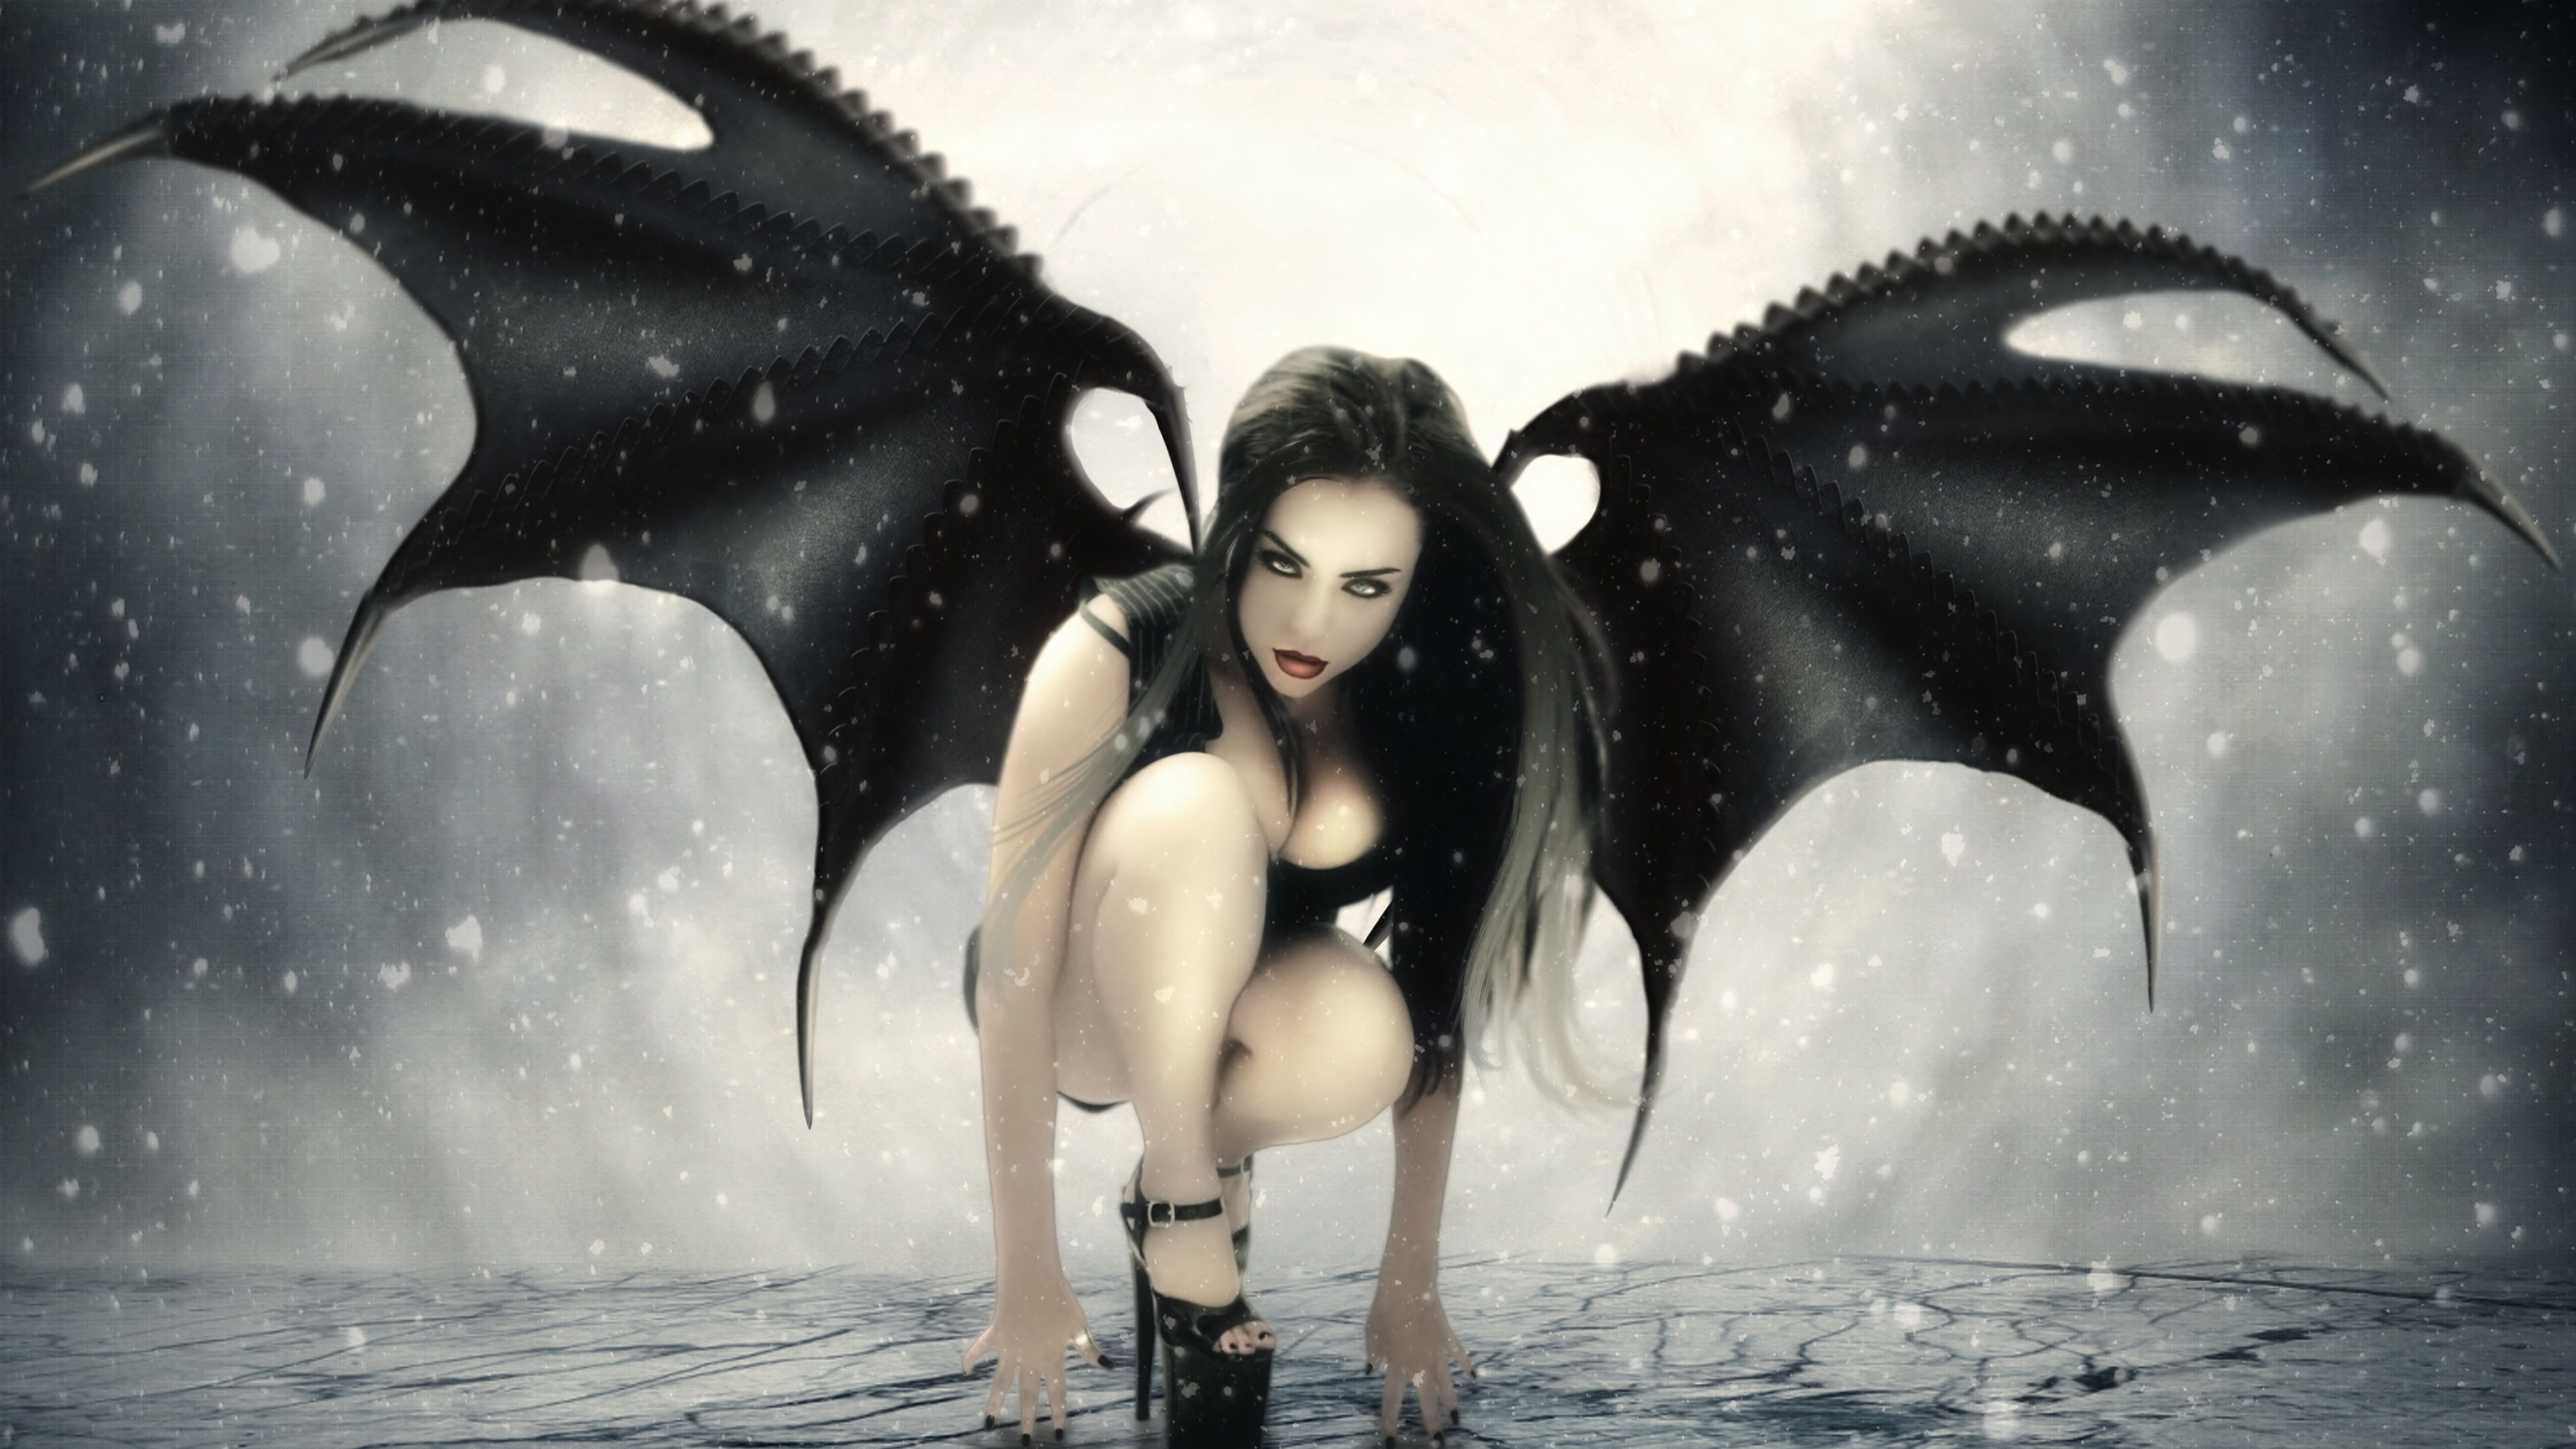 General demoness realistic succubus fantasy girl wings demon fantasy art